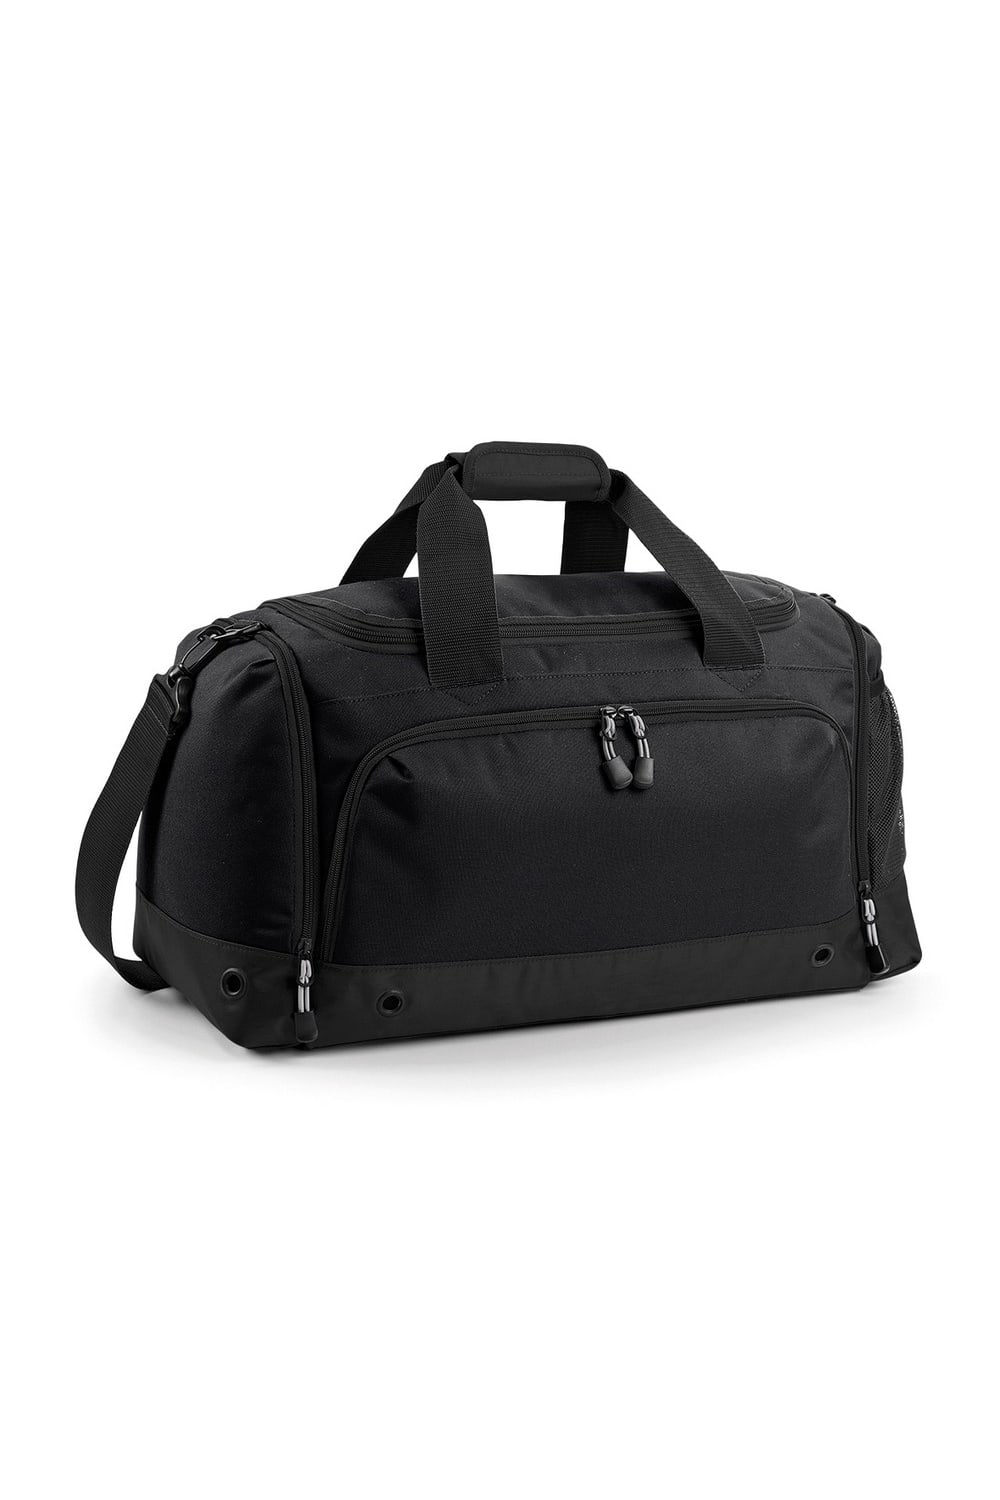 BagBase Sports Holdall / Duffel Bag (Black/Black) (One Size)